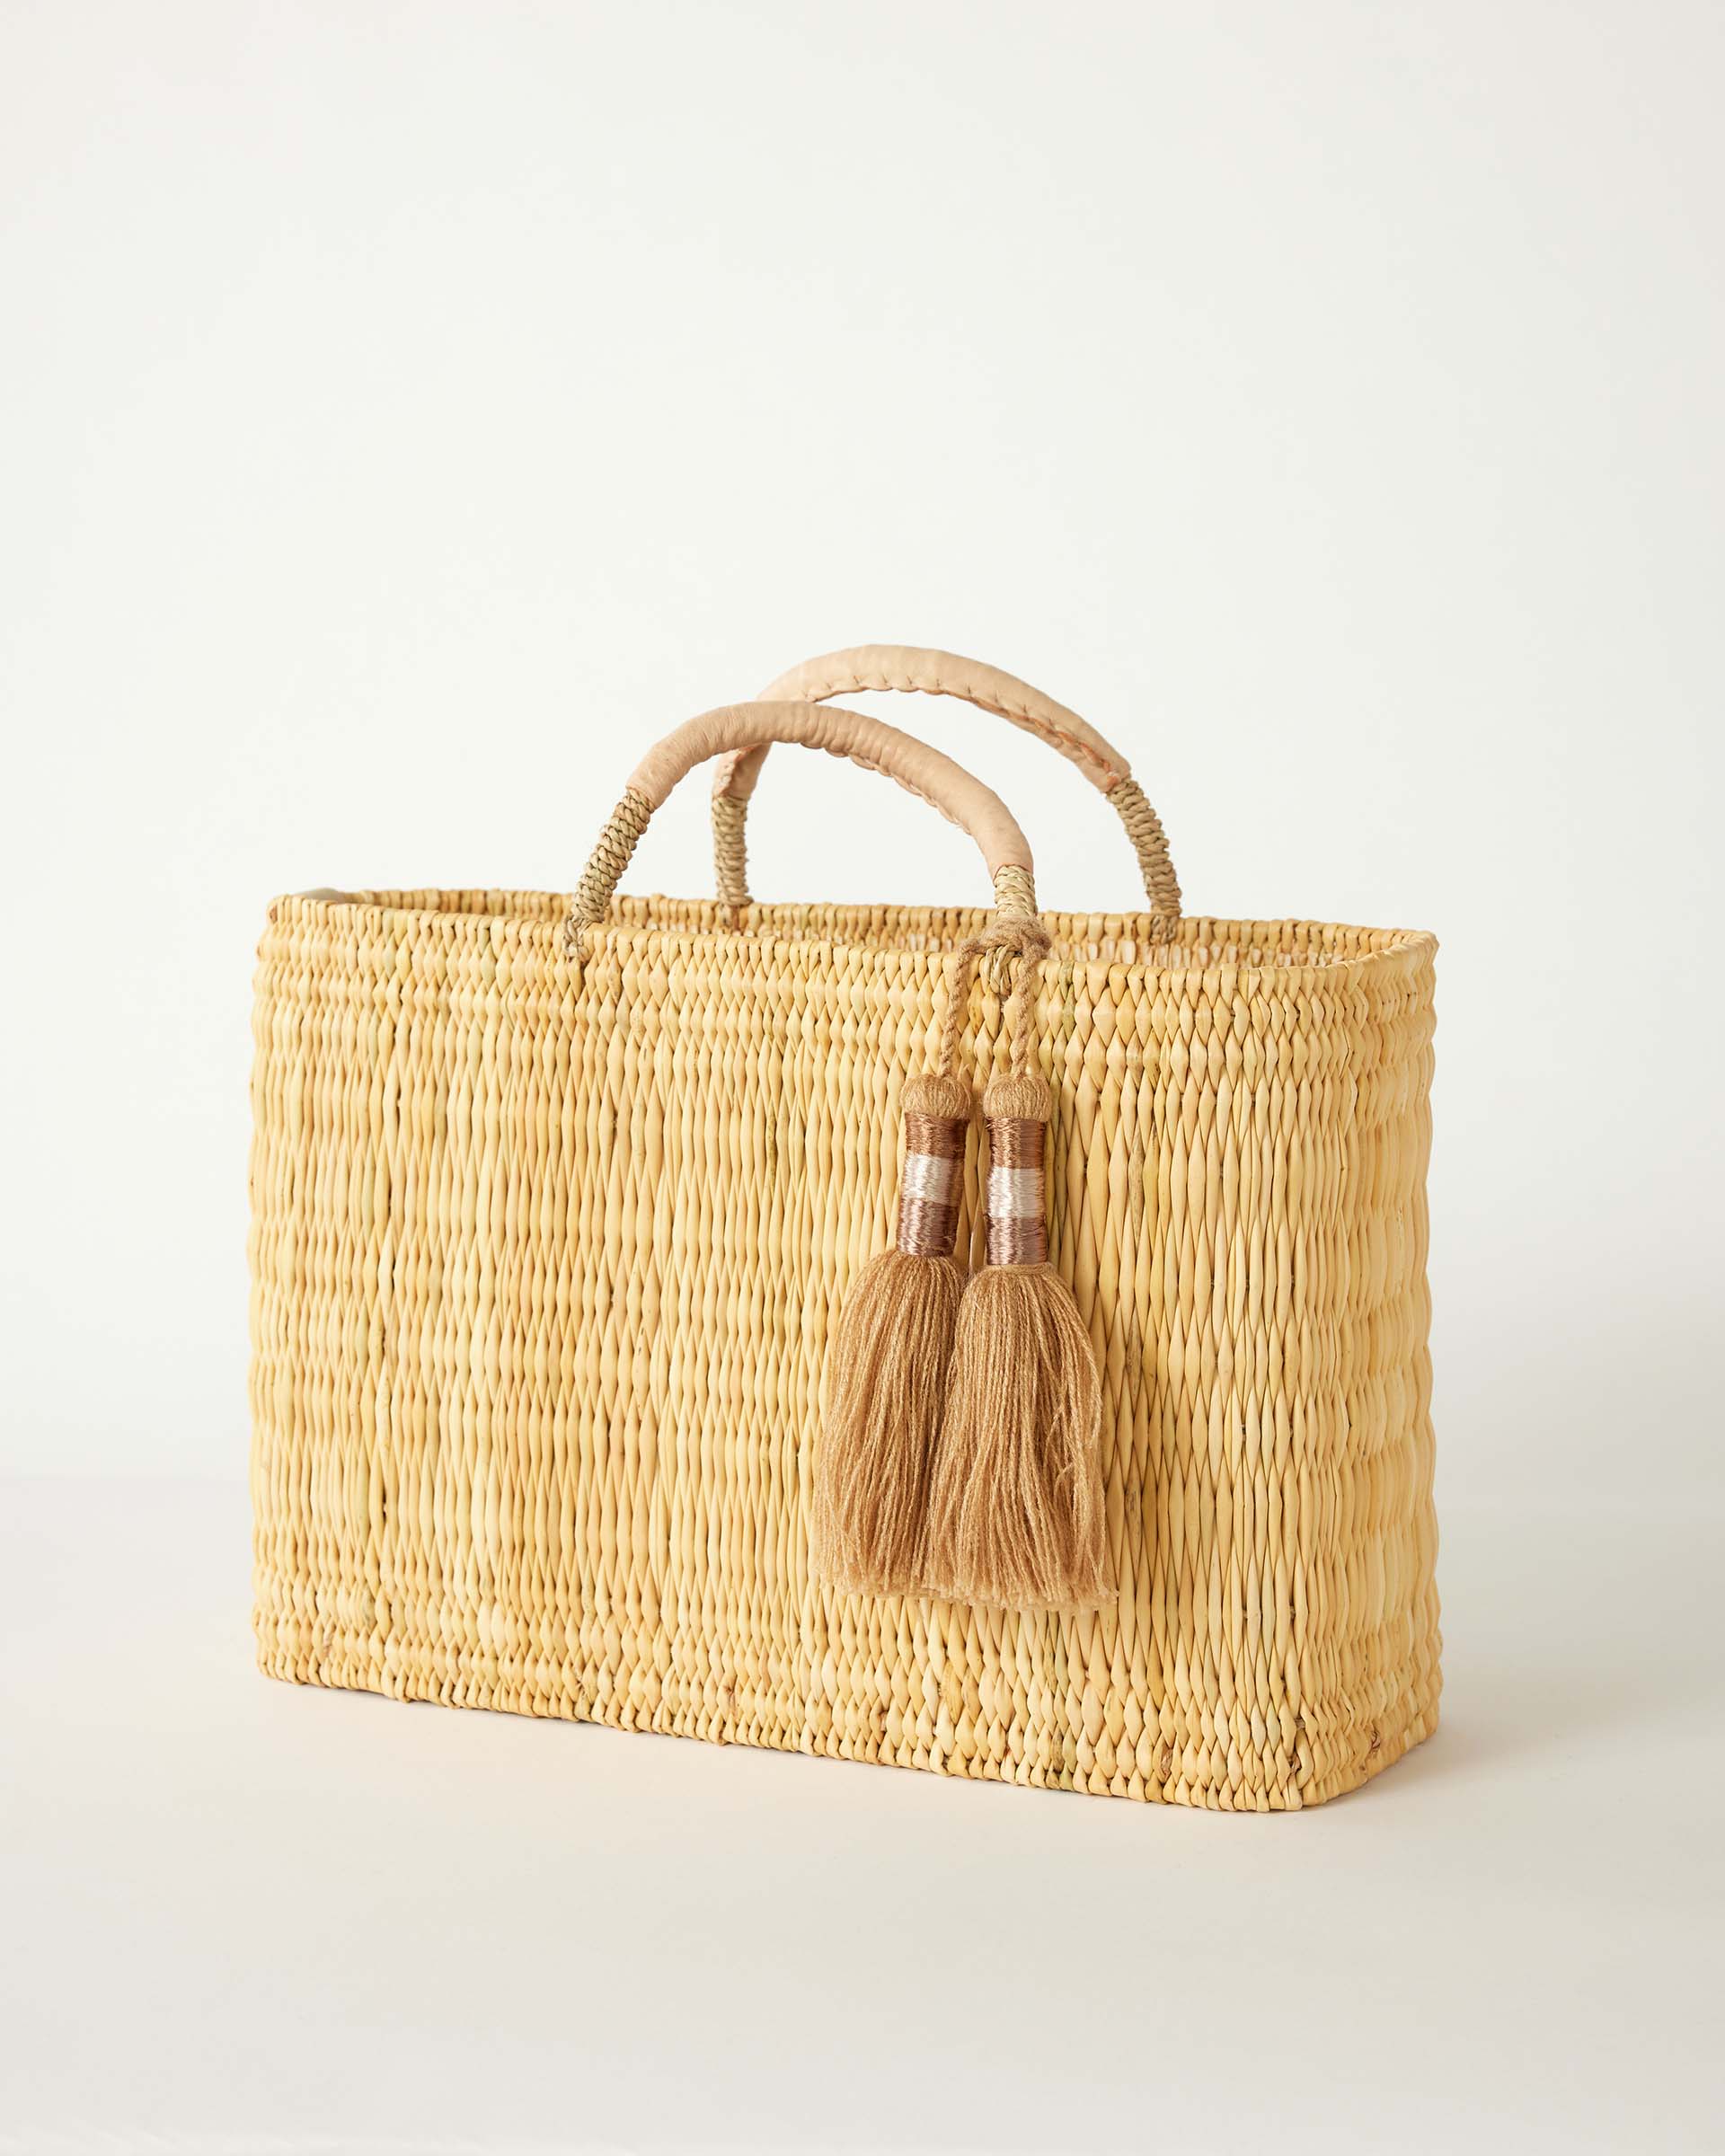 medina basket with natural tassel